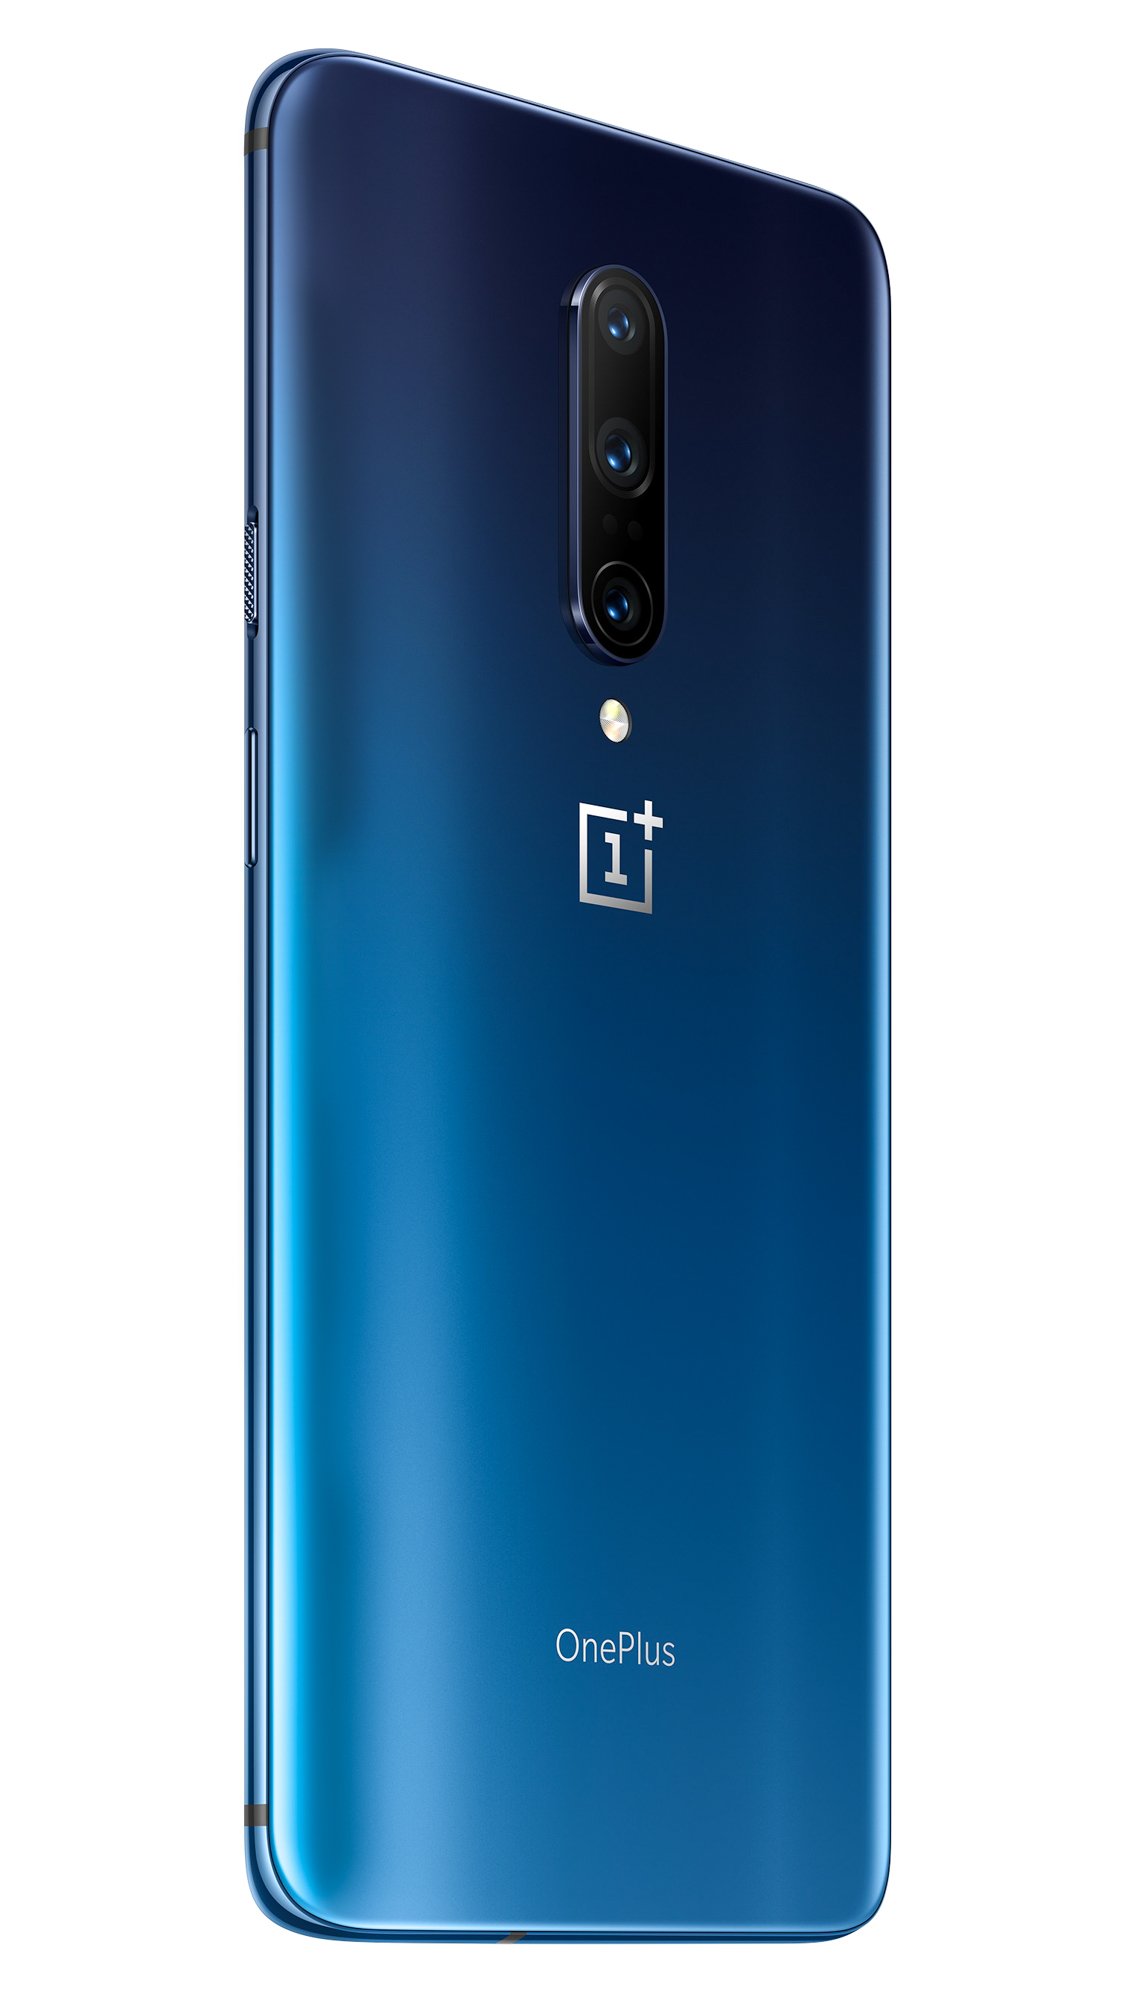 Das OnePlus 7 Pro in Nebula Blue sieht einfach umwerfend aus, die Farbe verläuft von einem sehr dunklen Blau in ein sehr helles Blau über und verleiht dem Smartphone so einen sehr hochwertigen Look.